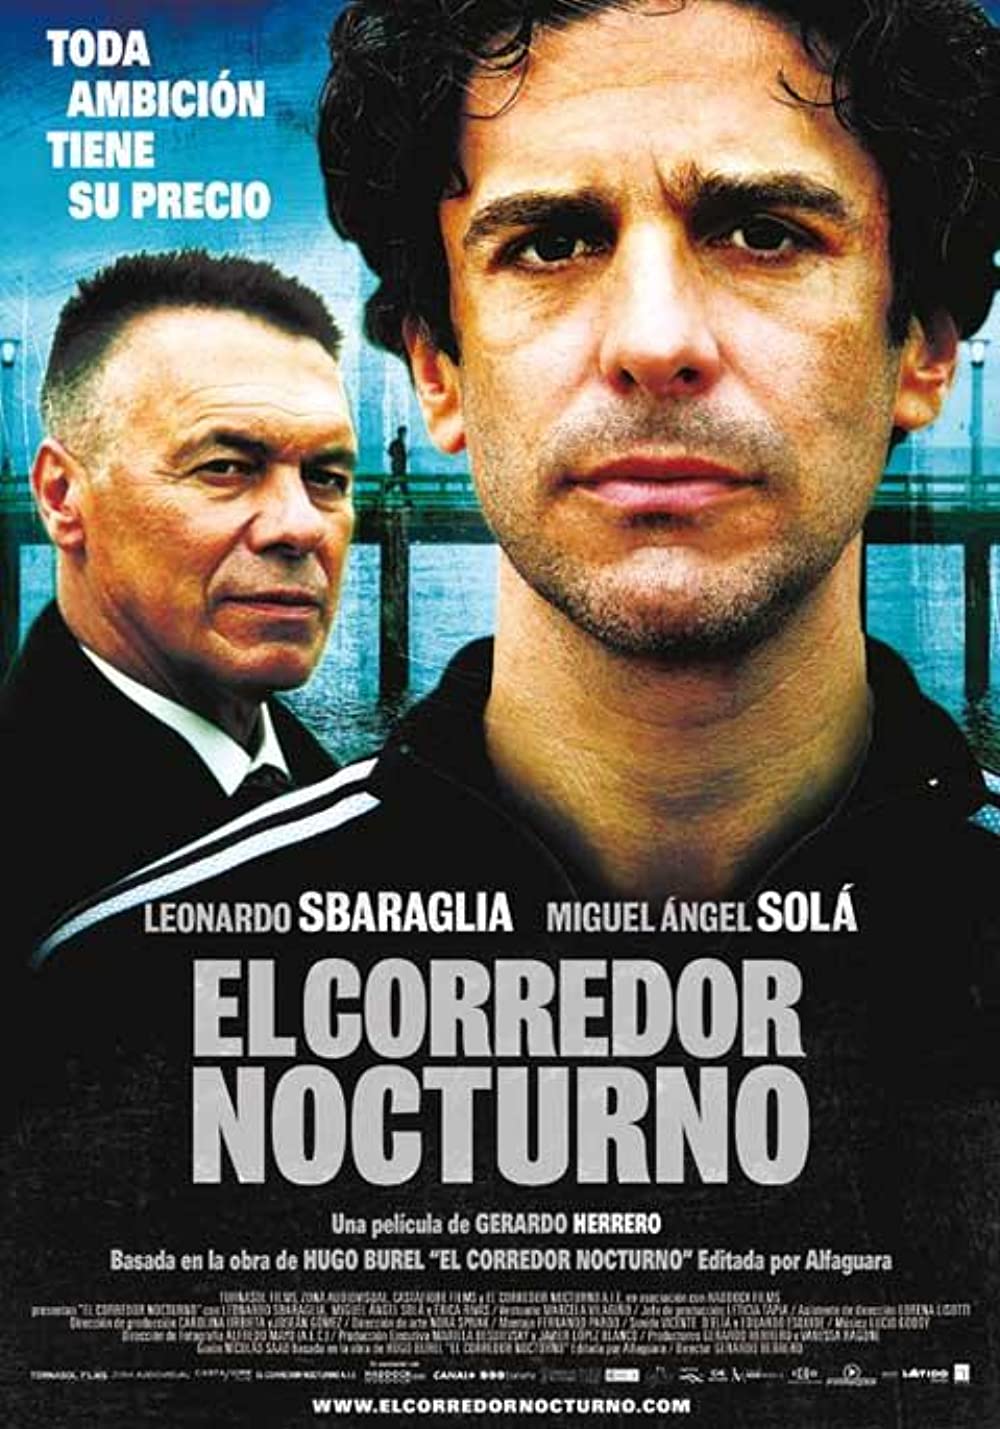 Download El corredor nocturno Movie | El Corredor Nocturno Movie Review